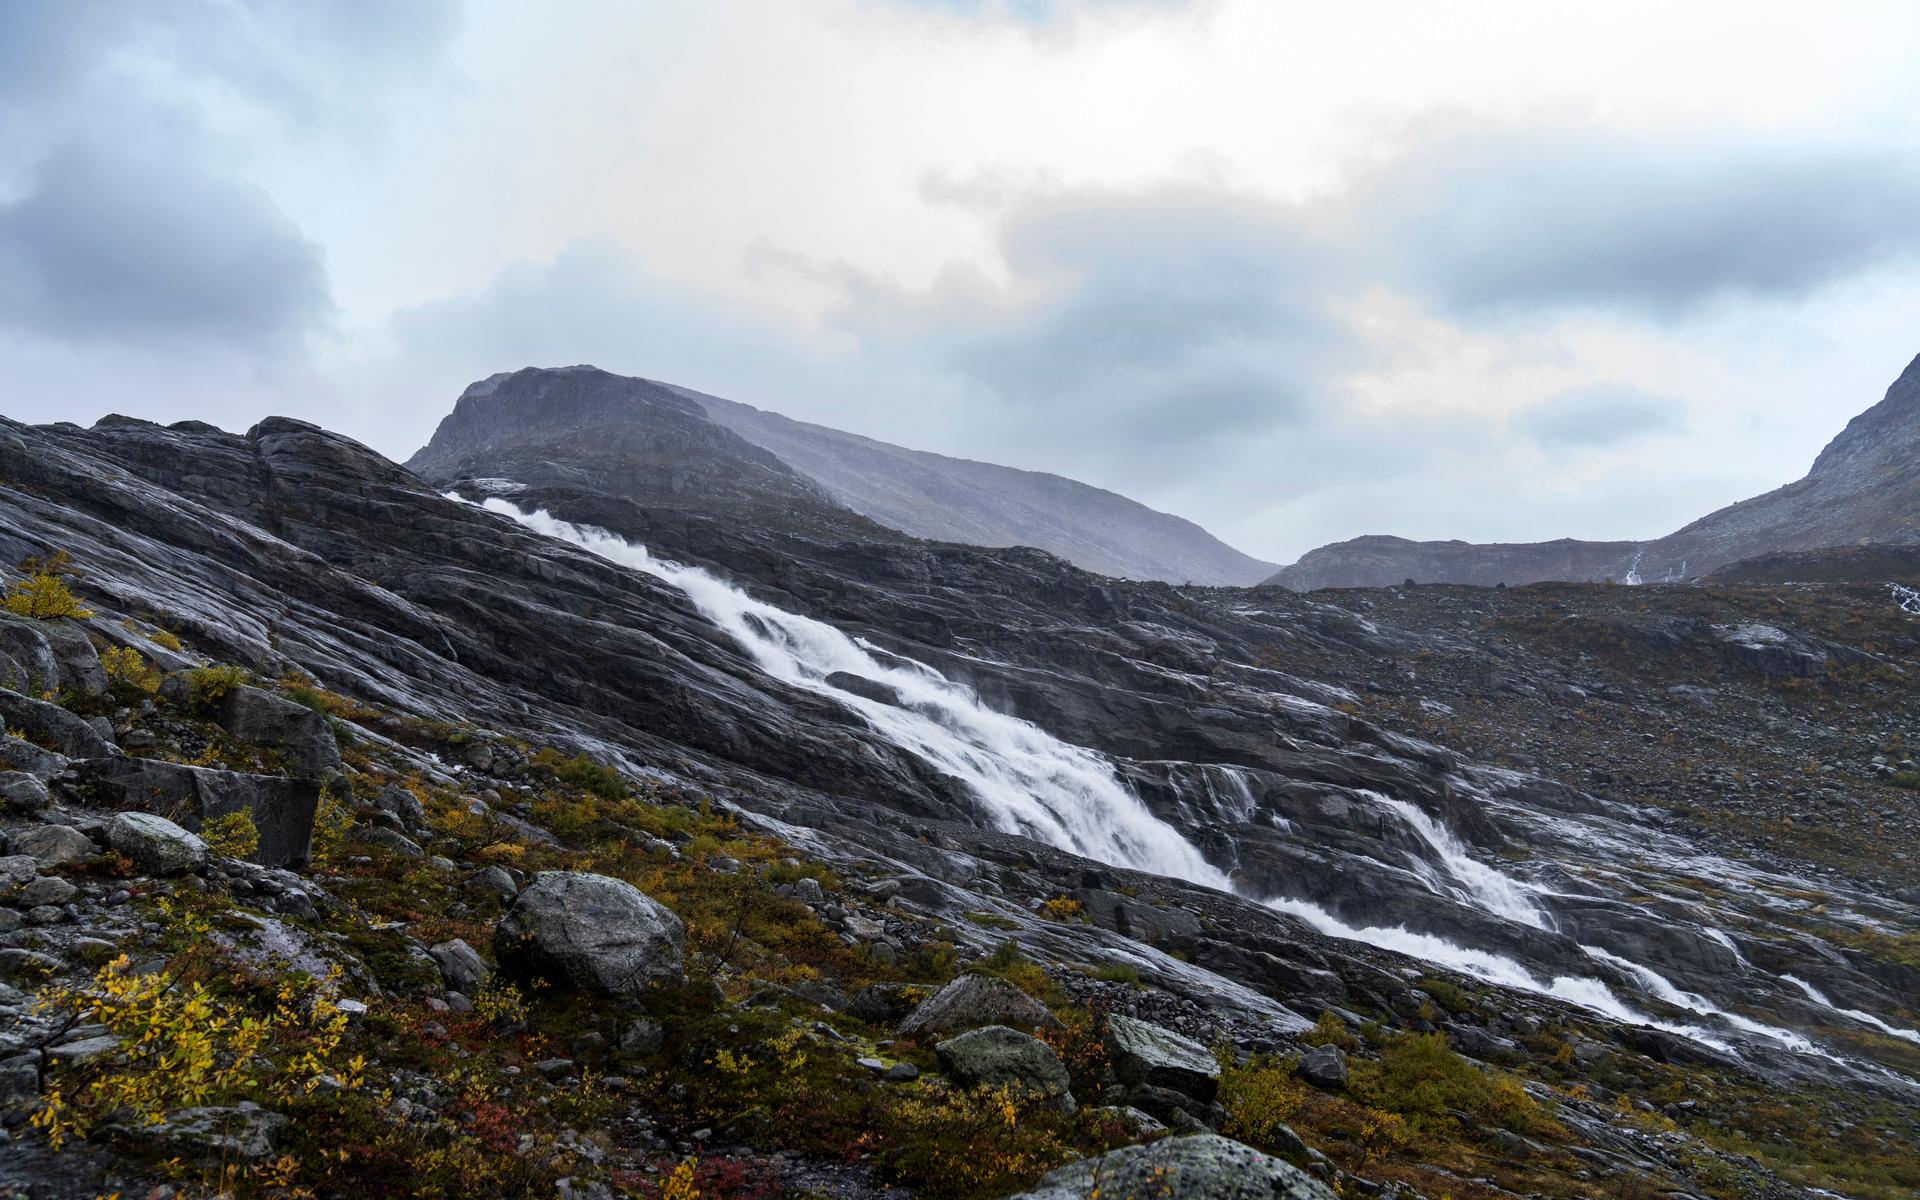 Bergssidan, som tidigare var täckt av is, har slipats av stenar som suttit fast under isen.